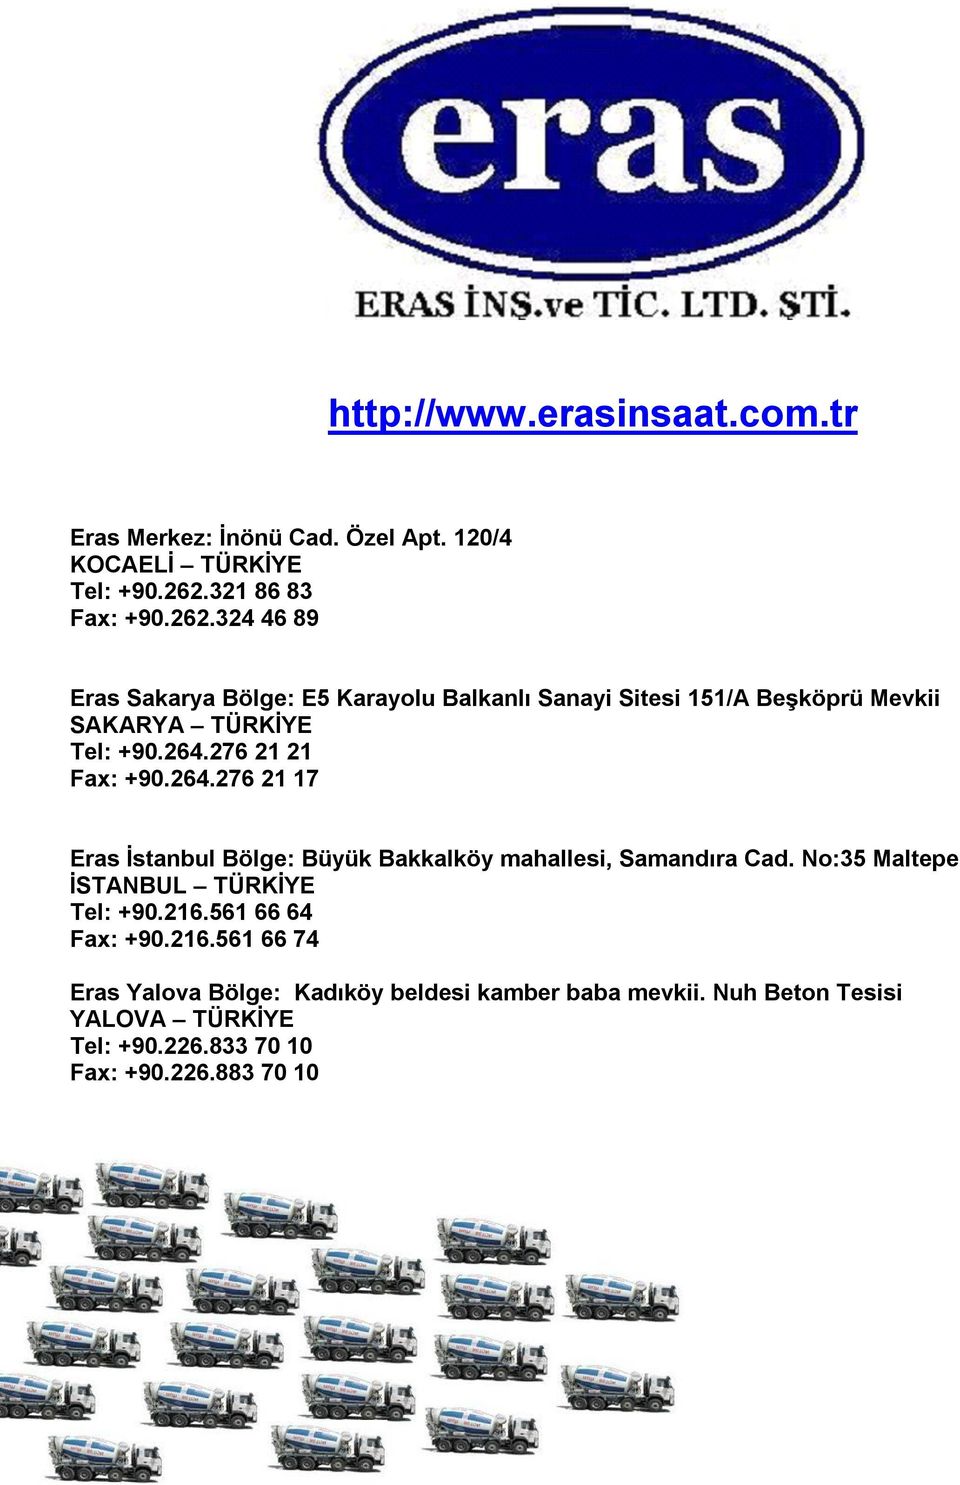 264.276 21 21 Fax: +90.264.276 21 17 Eras İstanbul Bölge: Büyük Bakkalköy mahallesi, Samandıra Cad.